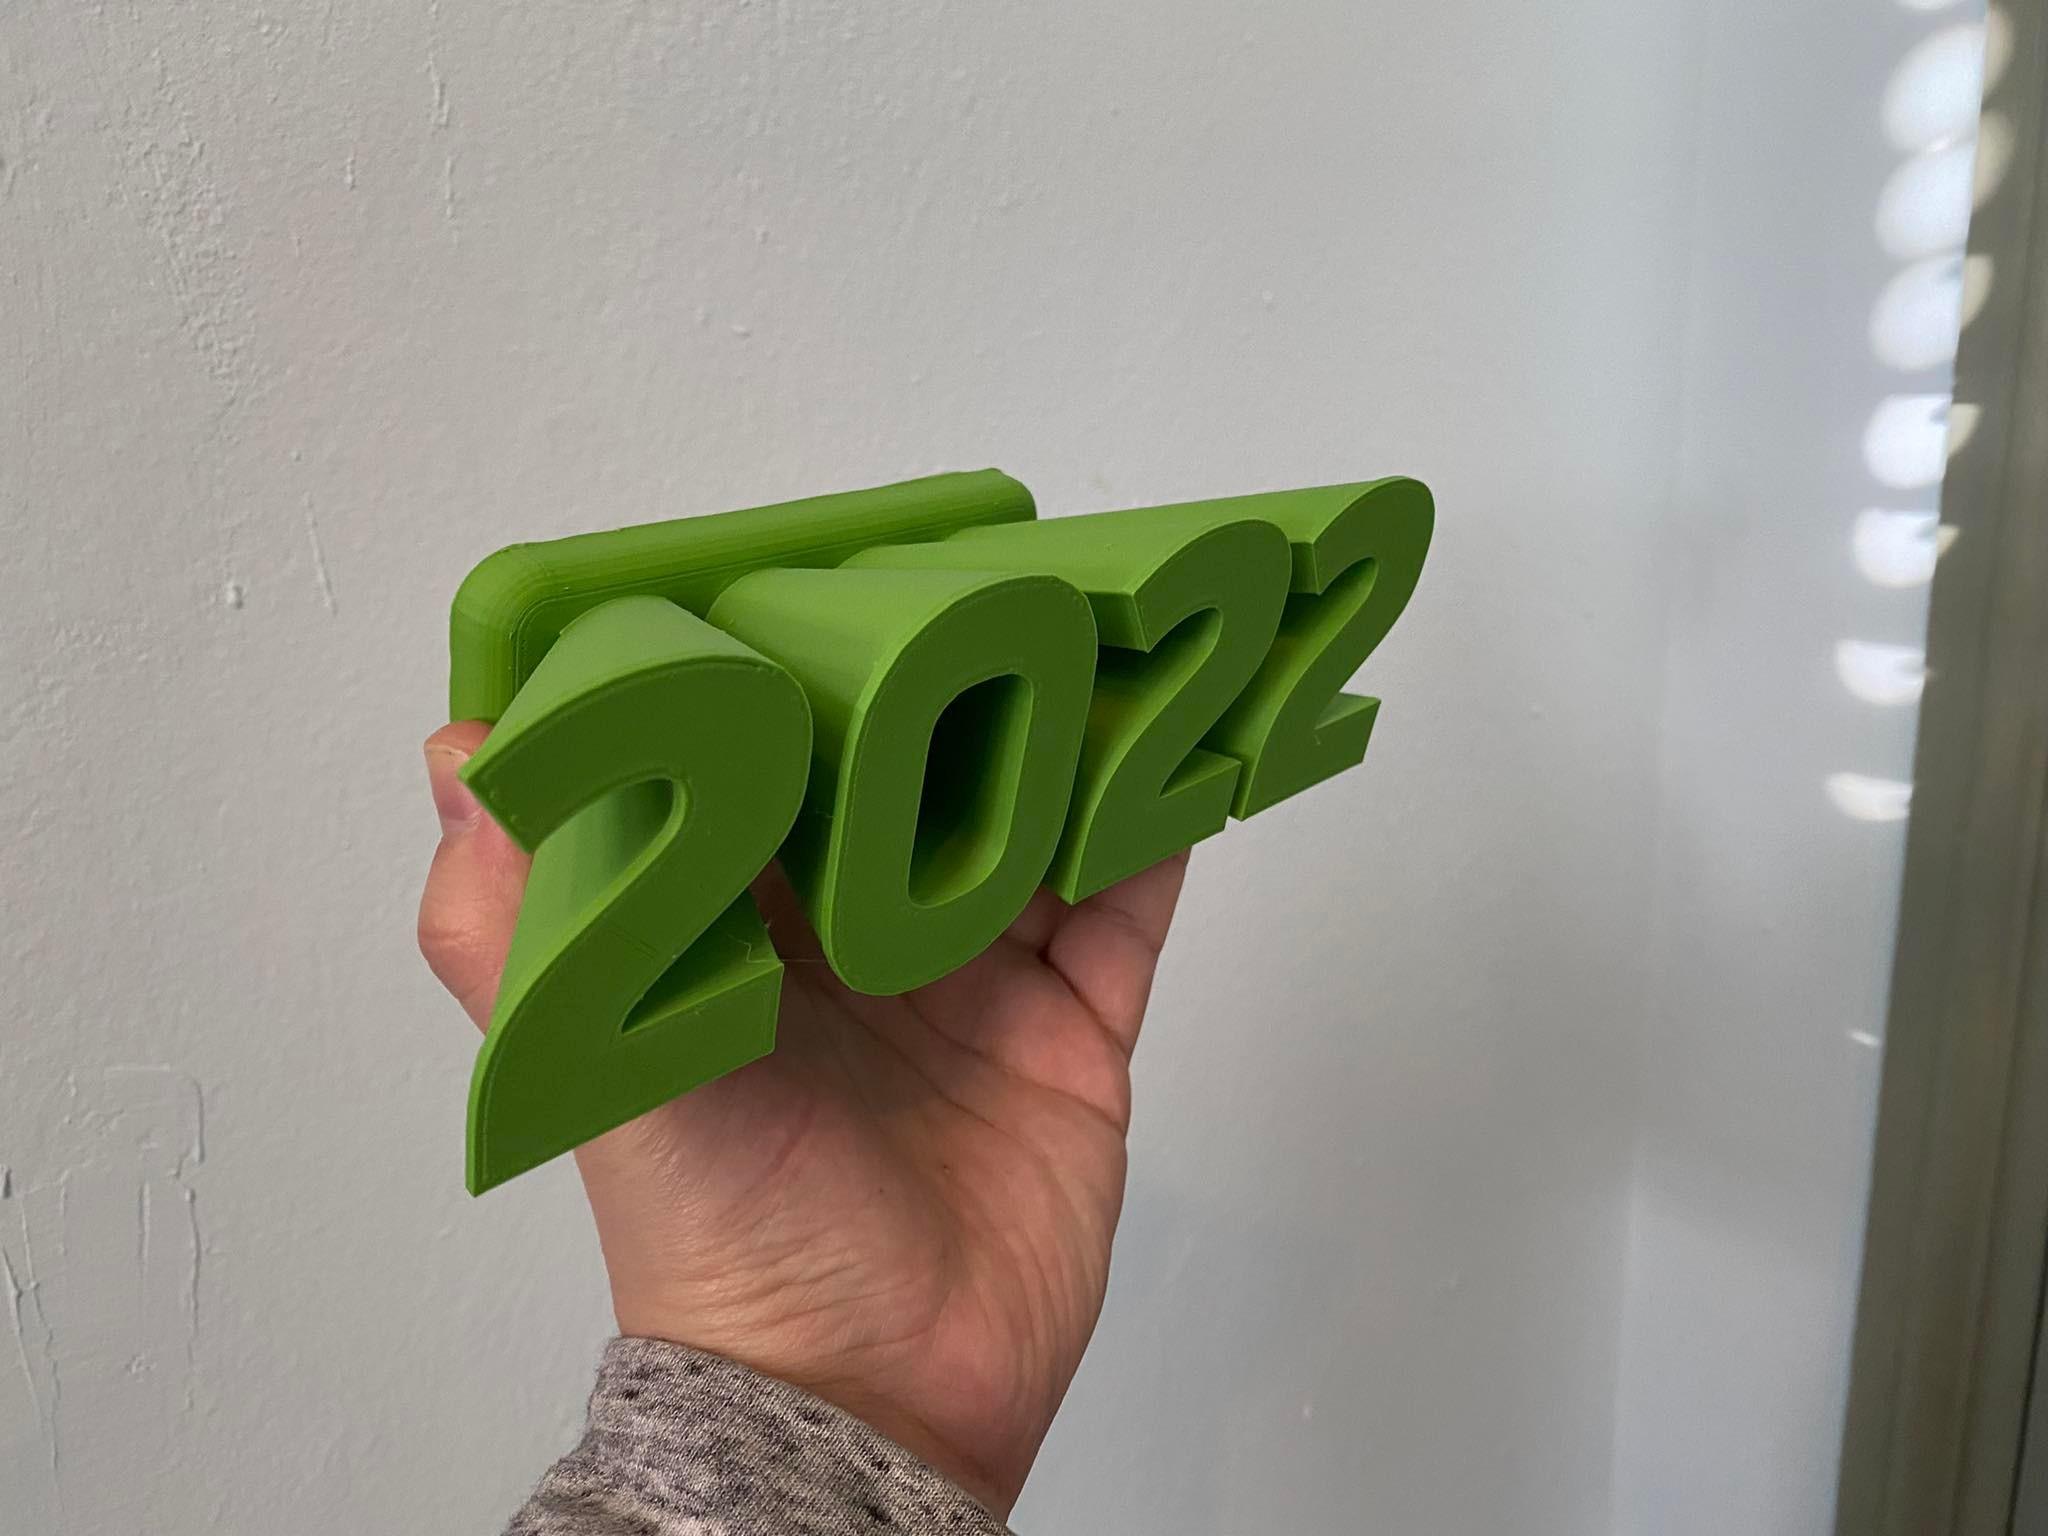 3D 2022 3d model